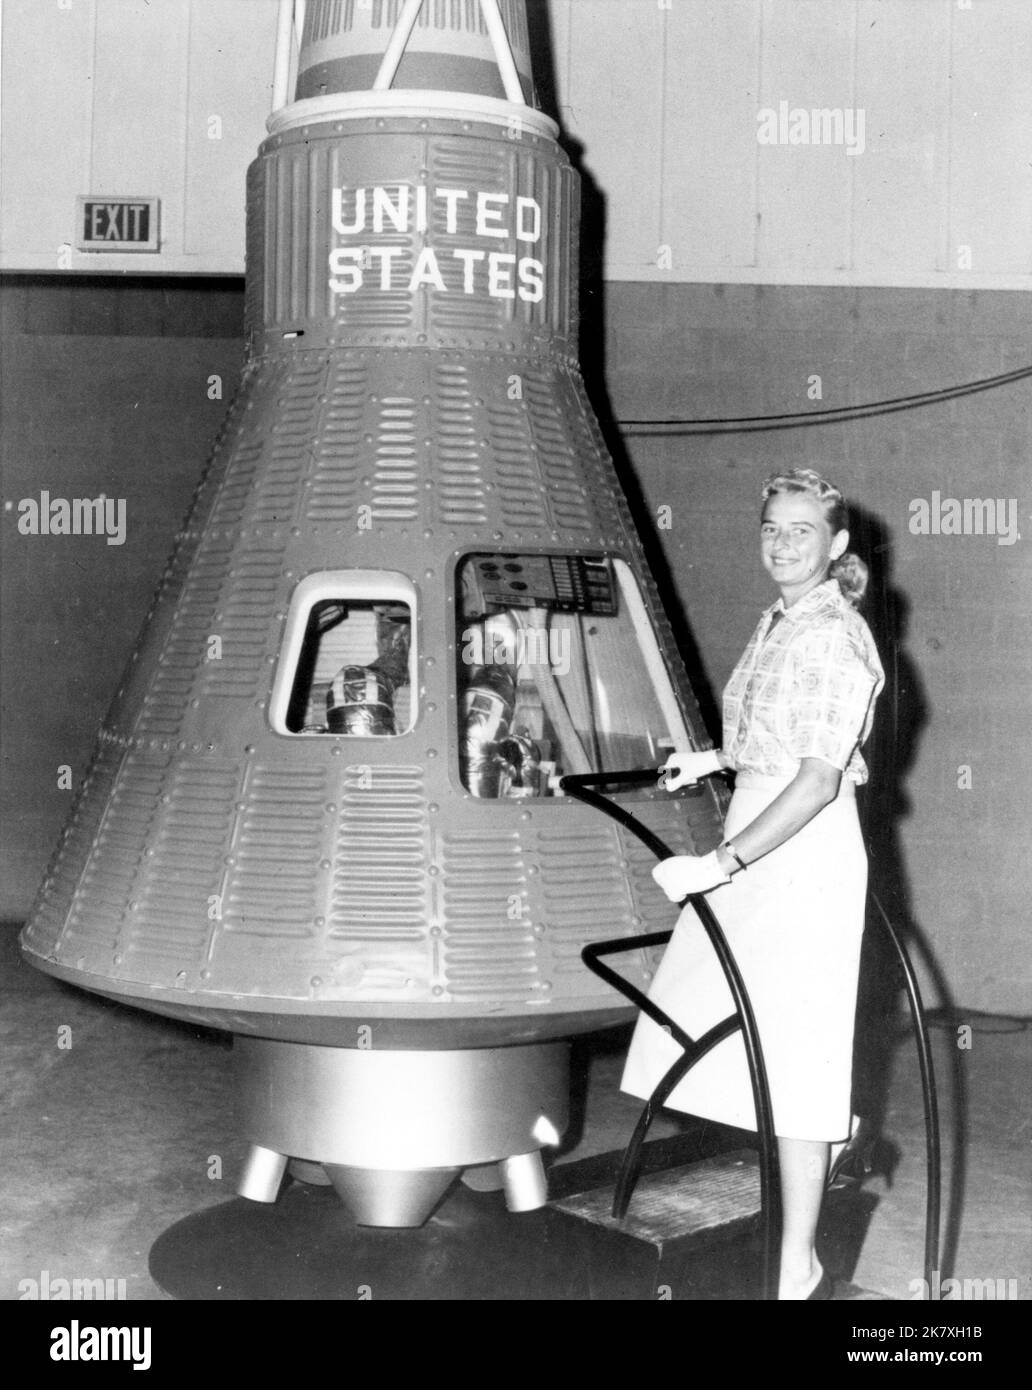 Jerrie Cobb pose à côté d'une capsule de vaisseau spatial Mercury. Et, bien qu'elle n'ait jamais volé dans l'espace, Cobb, avec 24 autres femmes, a subi des tests physiques semblables à ceux des astronautes de Mercury en pensant qu'elle pourrait devenir une stagiaire d'astronaute. Banque D'Images